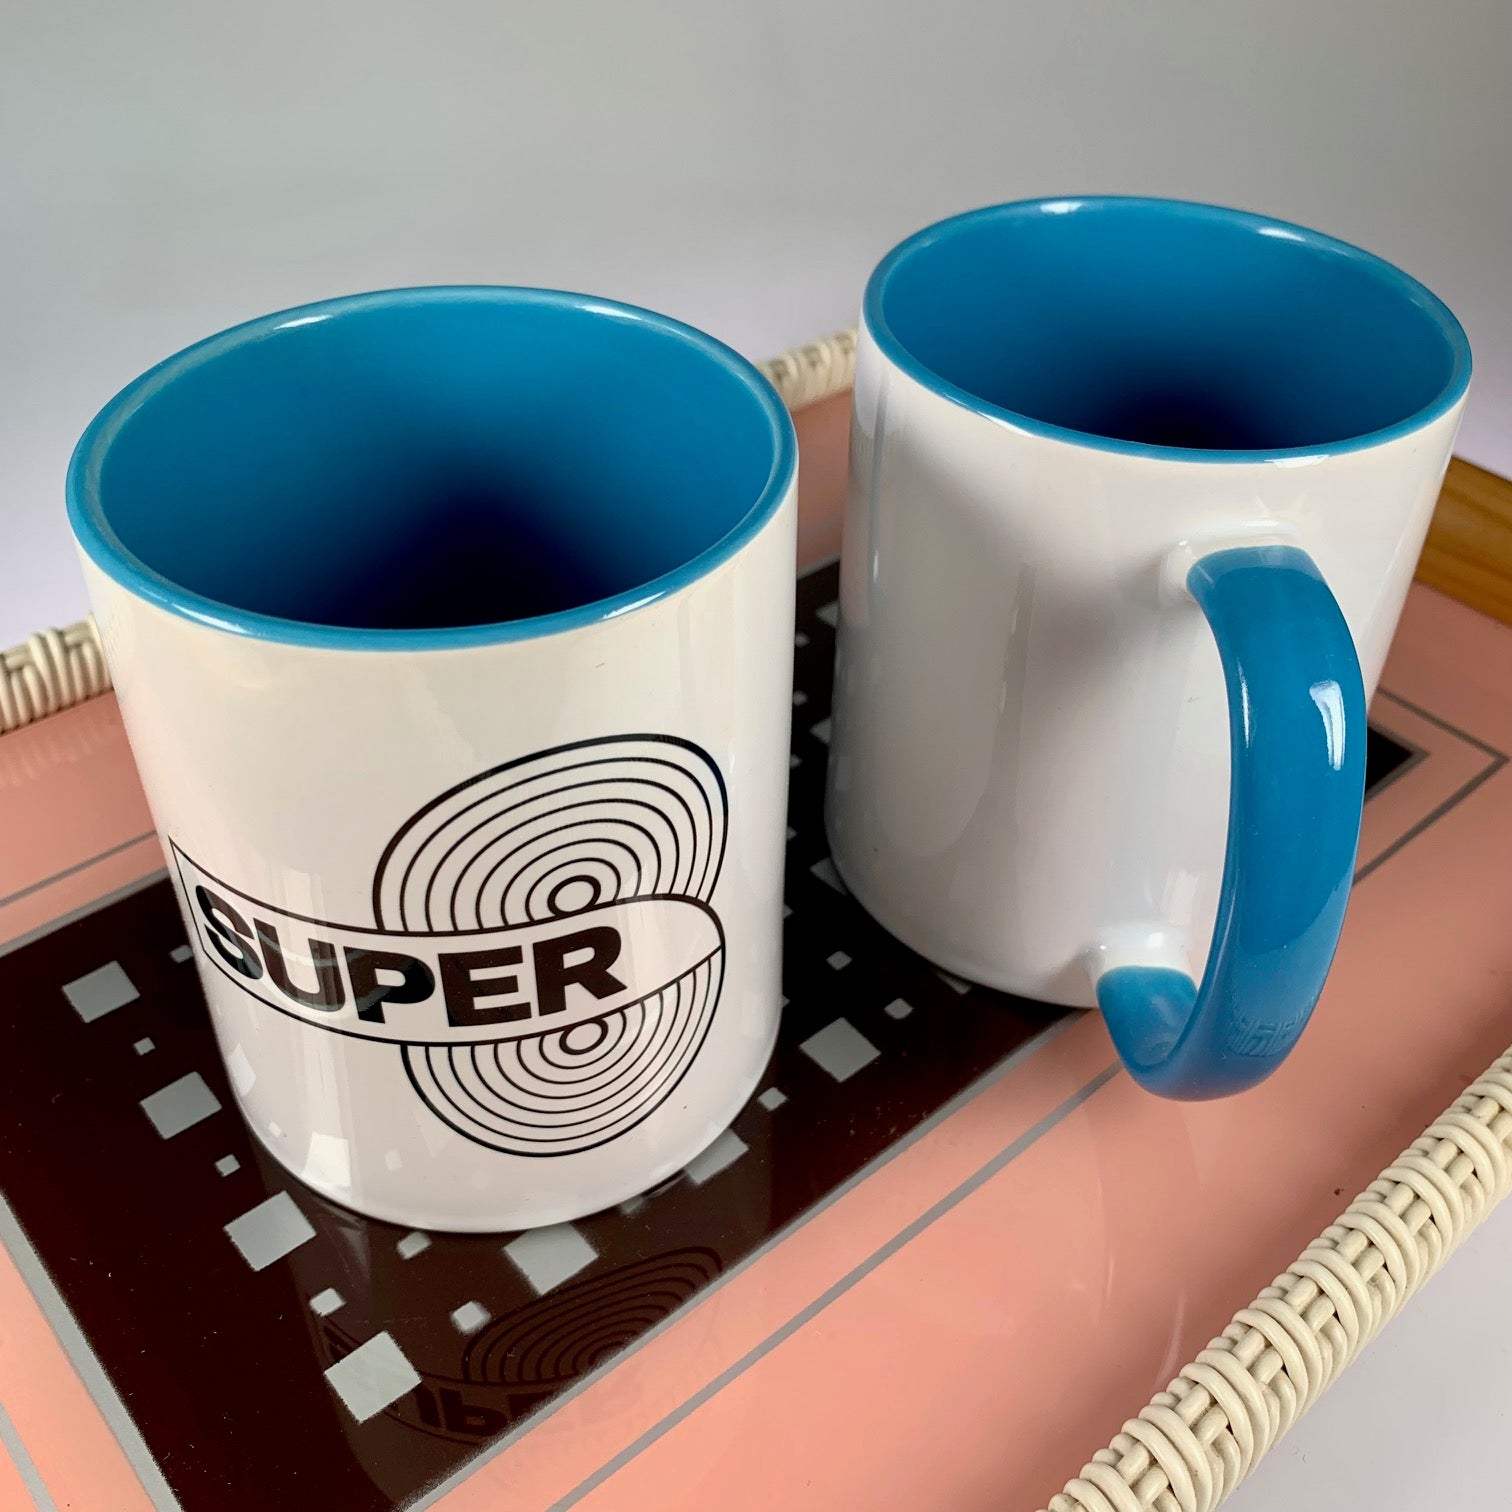 Super 8 Kaffeebecher I